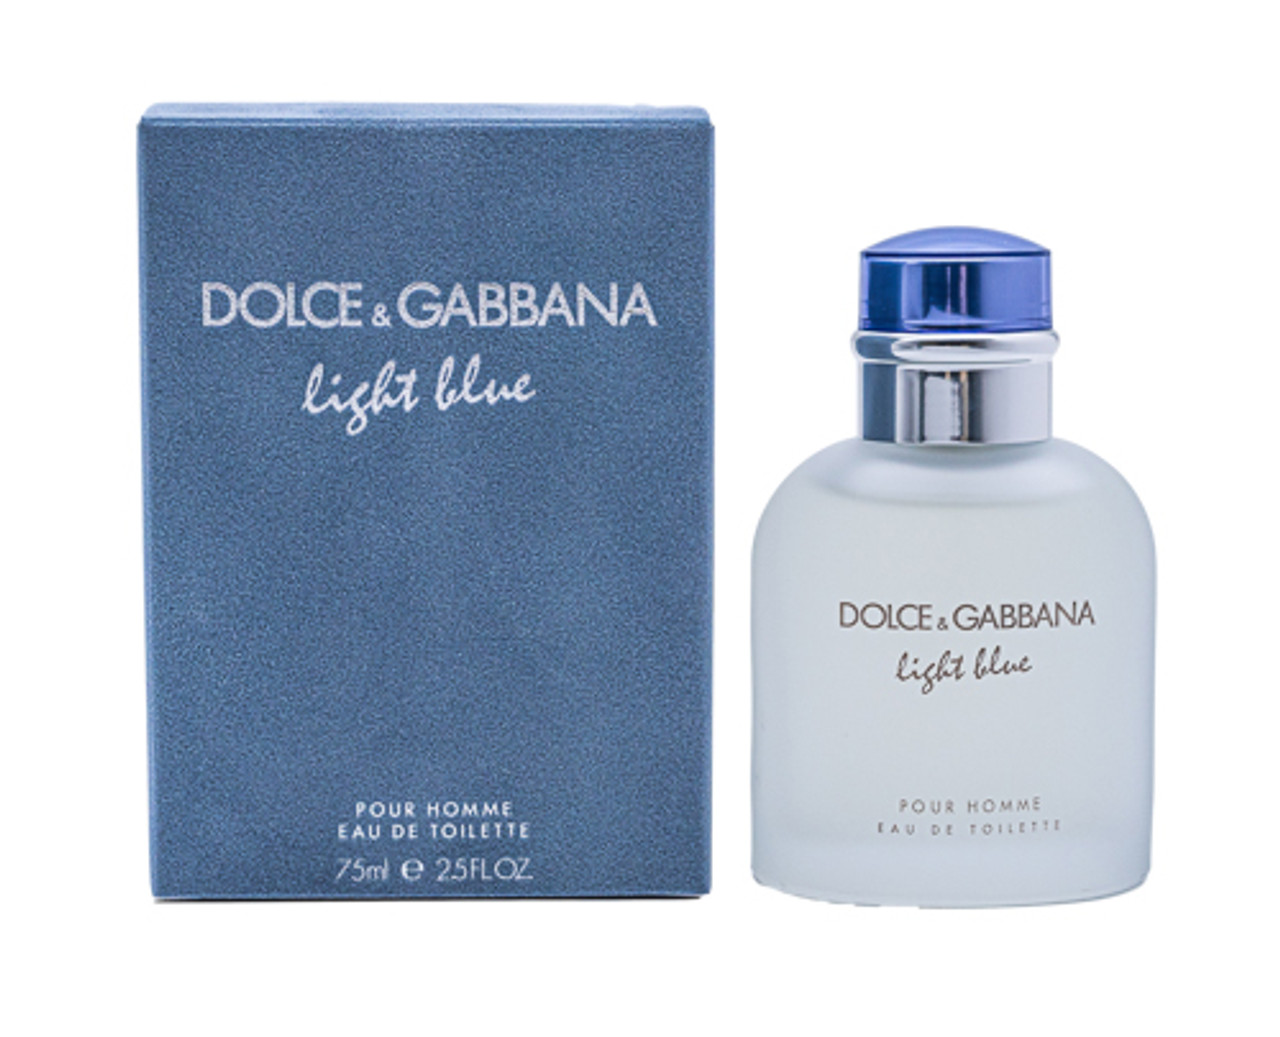 Light Blue by Dolce & Gabbana 2.5 oz EDT for men